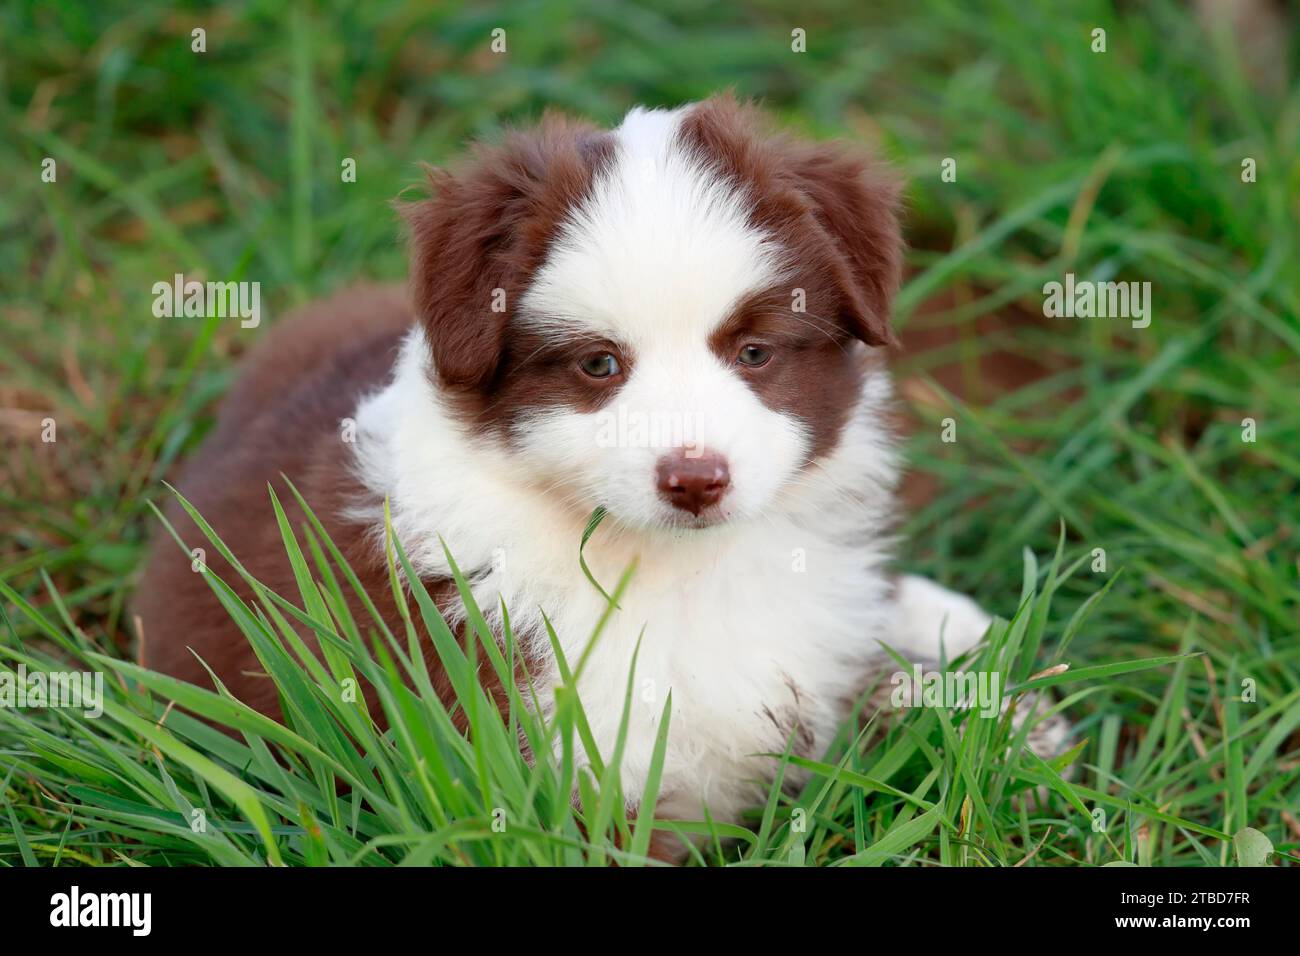 Cachorro de pastor americano en miniatura (Canis lupus familiaris), cachorro acostado en hierba alta, retrato, Renania-Palatinado, Alemania Foto de stock